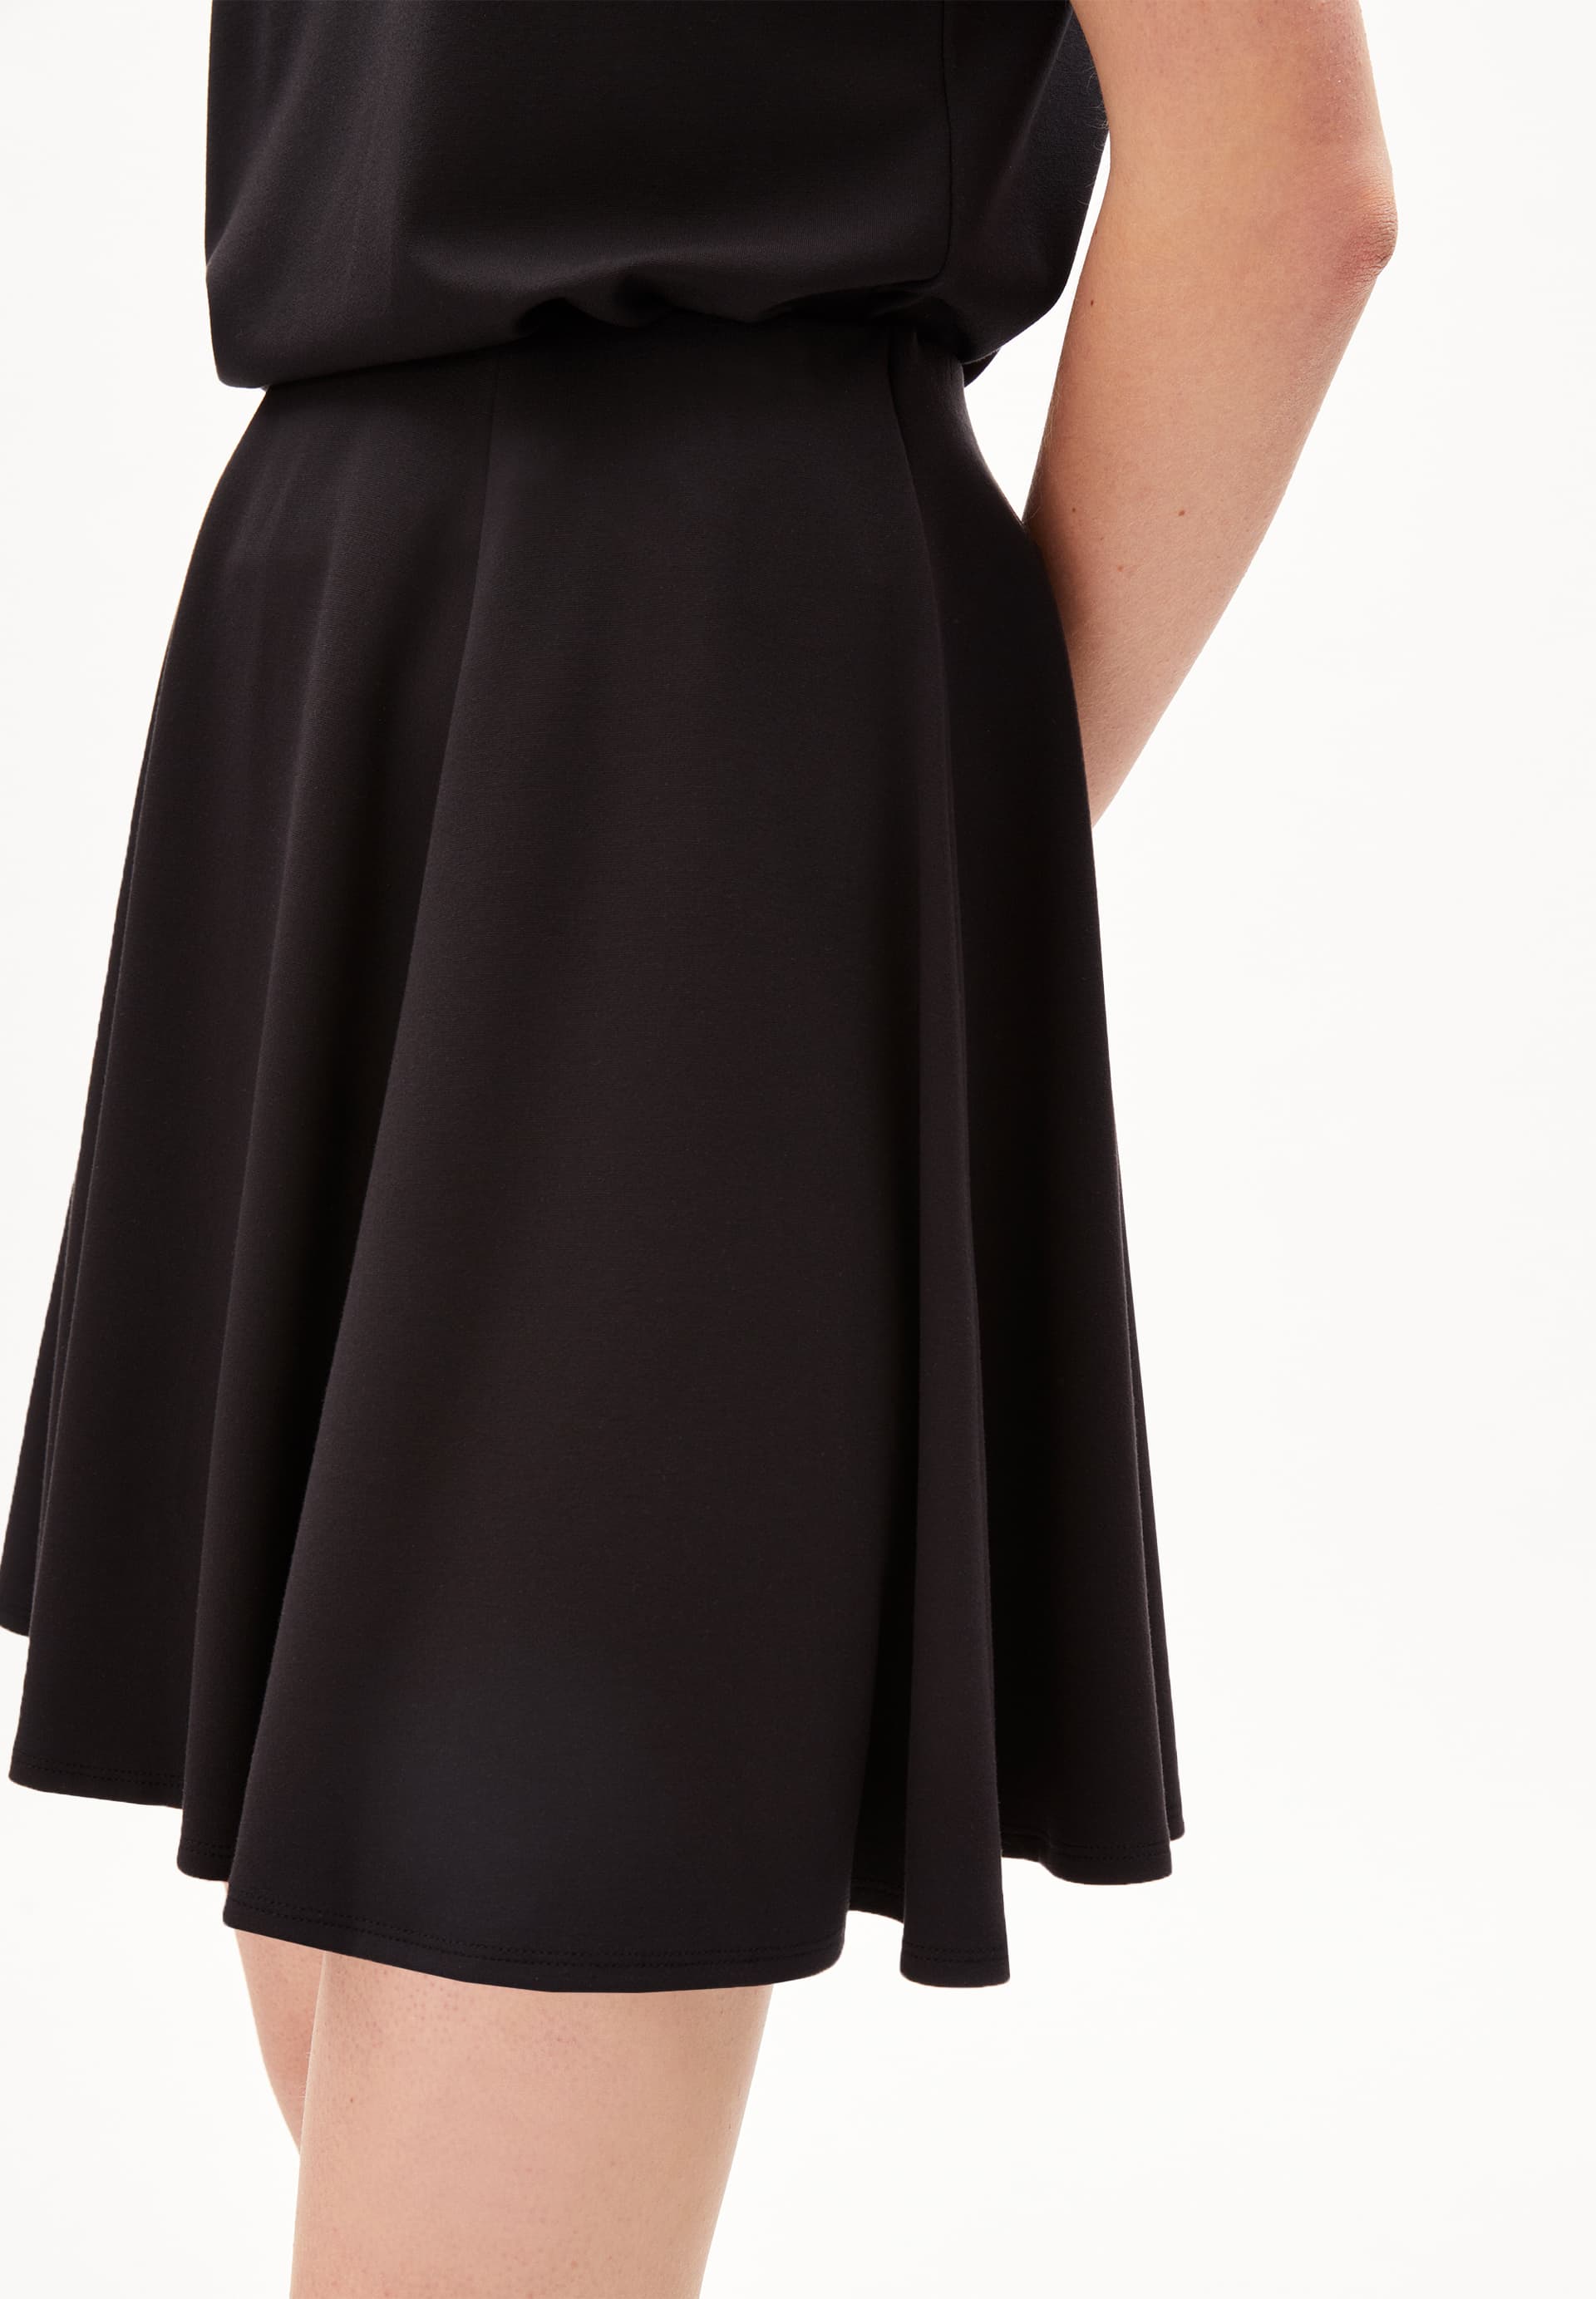 ZELDAA Jersey Skirt Regular Fit made of LENZING™ ECOVERO™ Viscose Mix